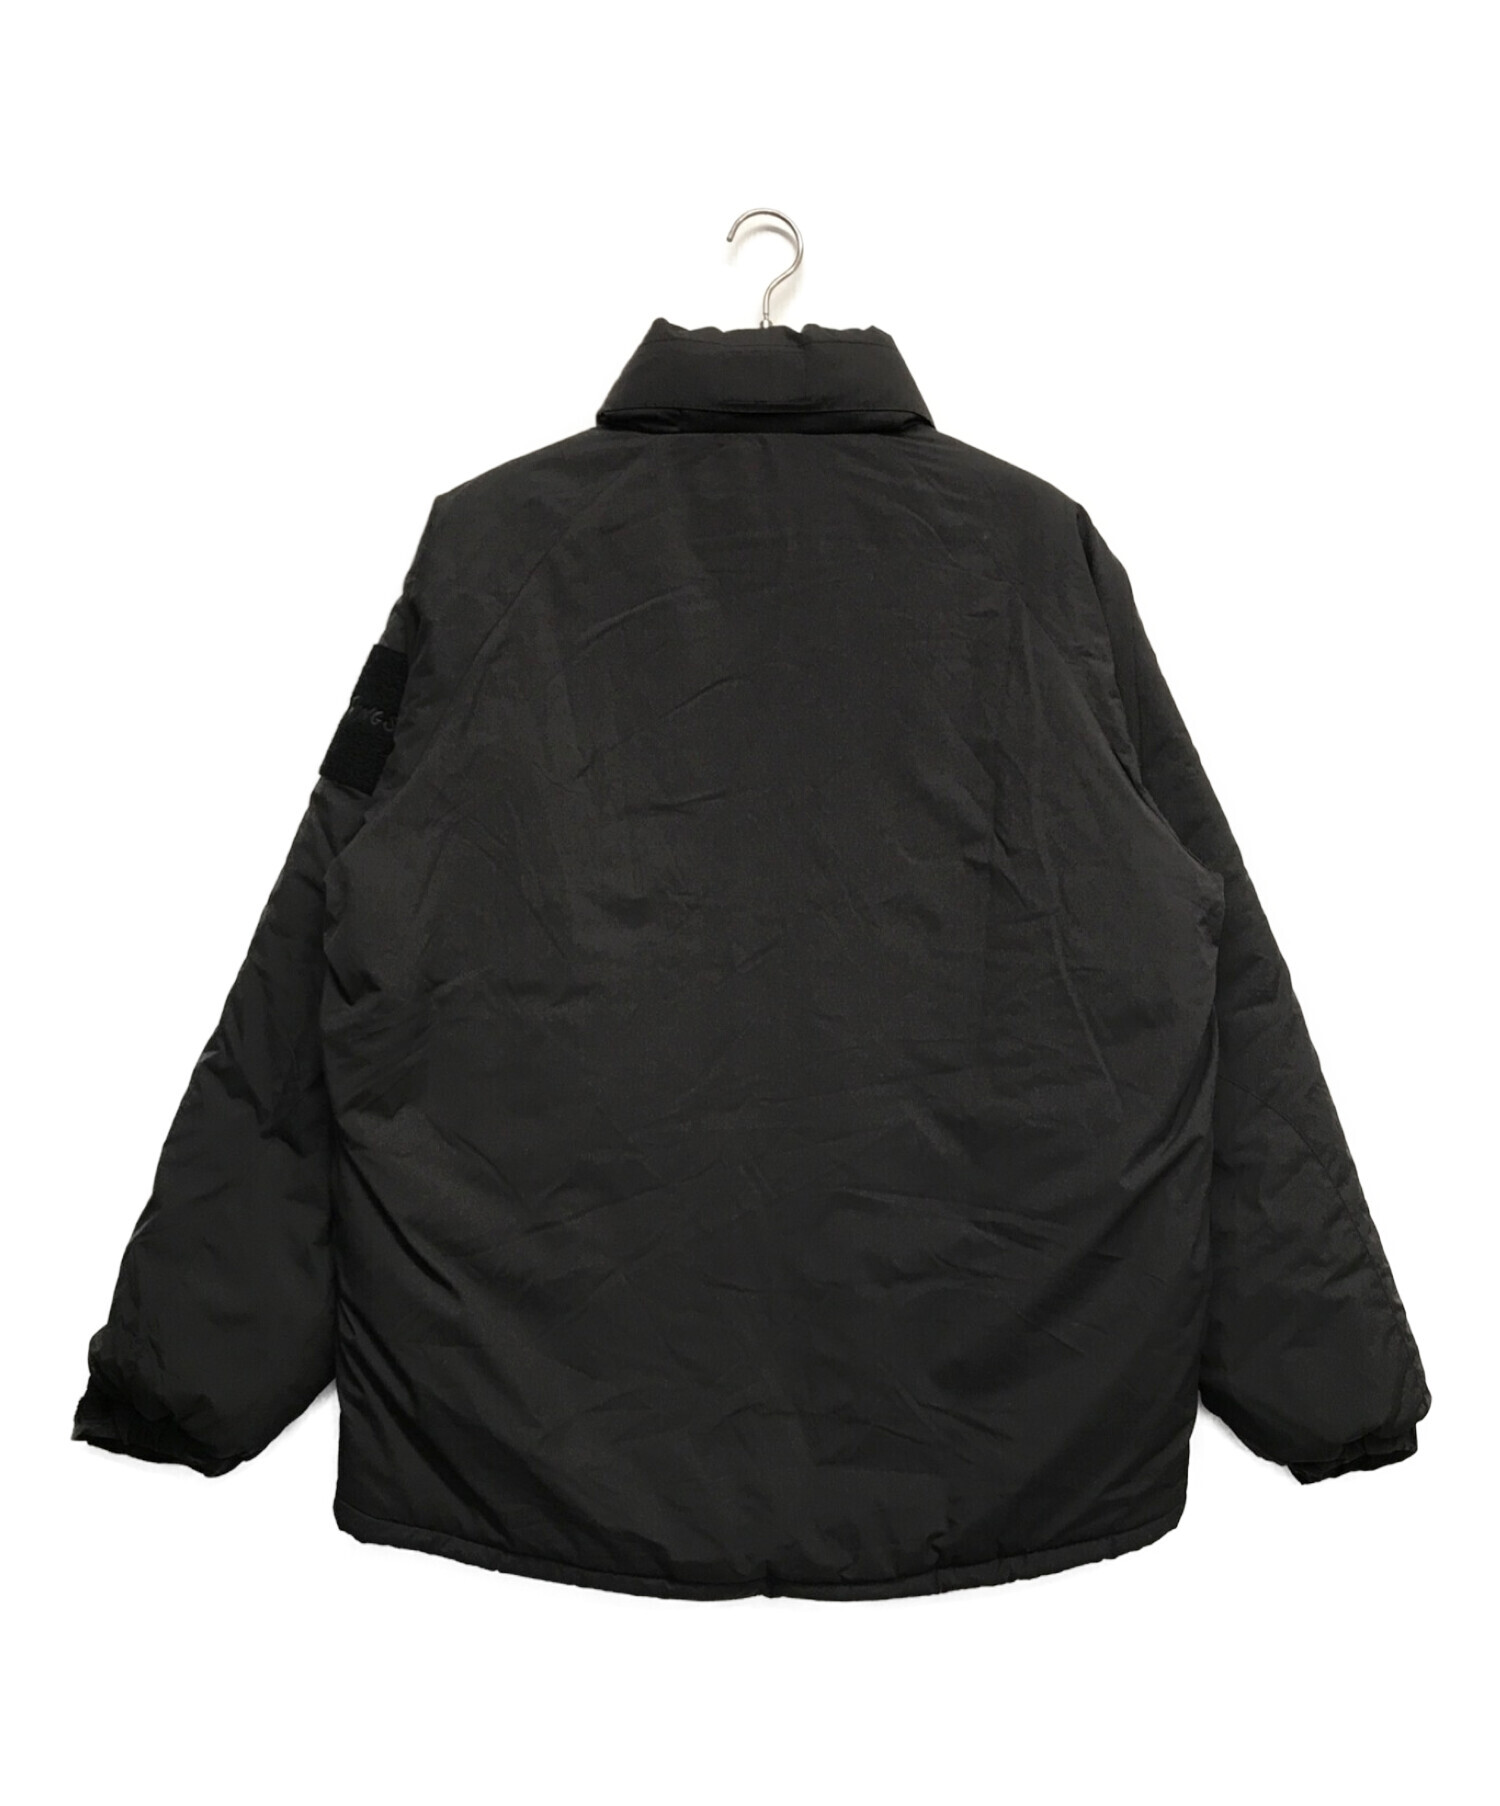 WILD THINGS (ワイルドシングス) ハッピー ジャケット ブラック サイズ:XL